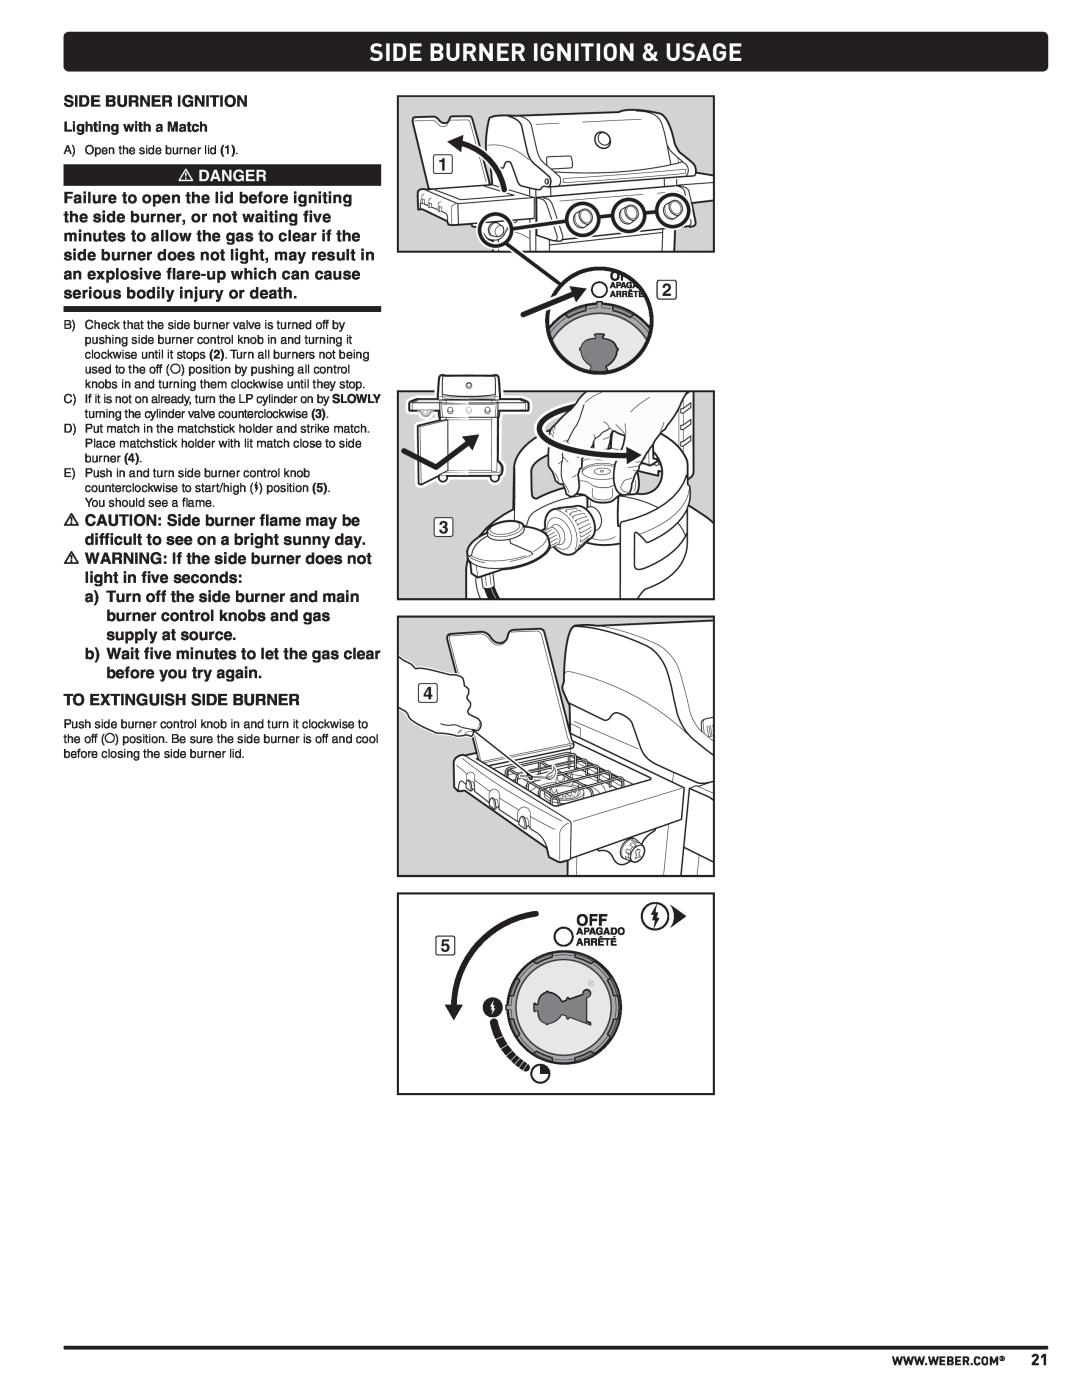 Weber PL - PG. 59 57205 manual Side Burner Ignition & Usage, m DANGER 